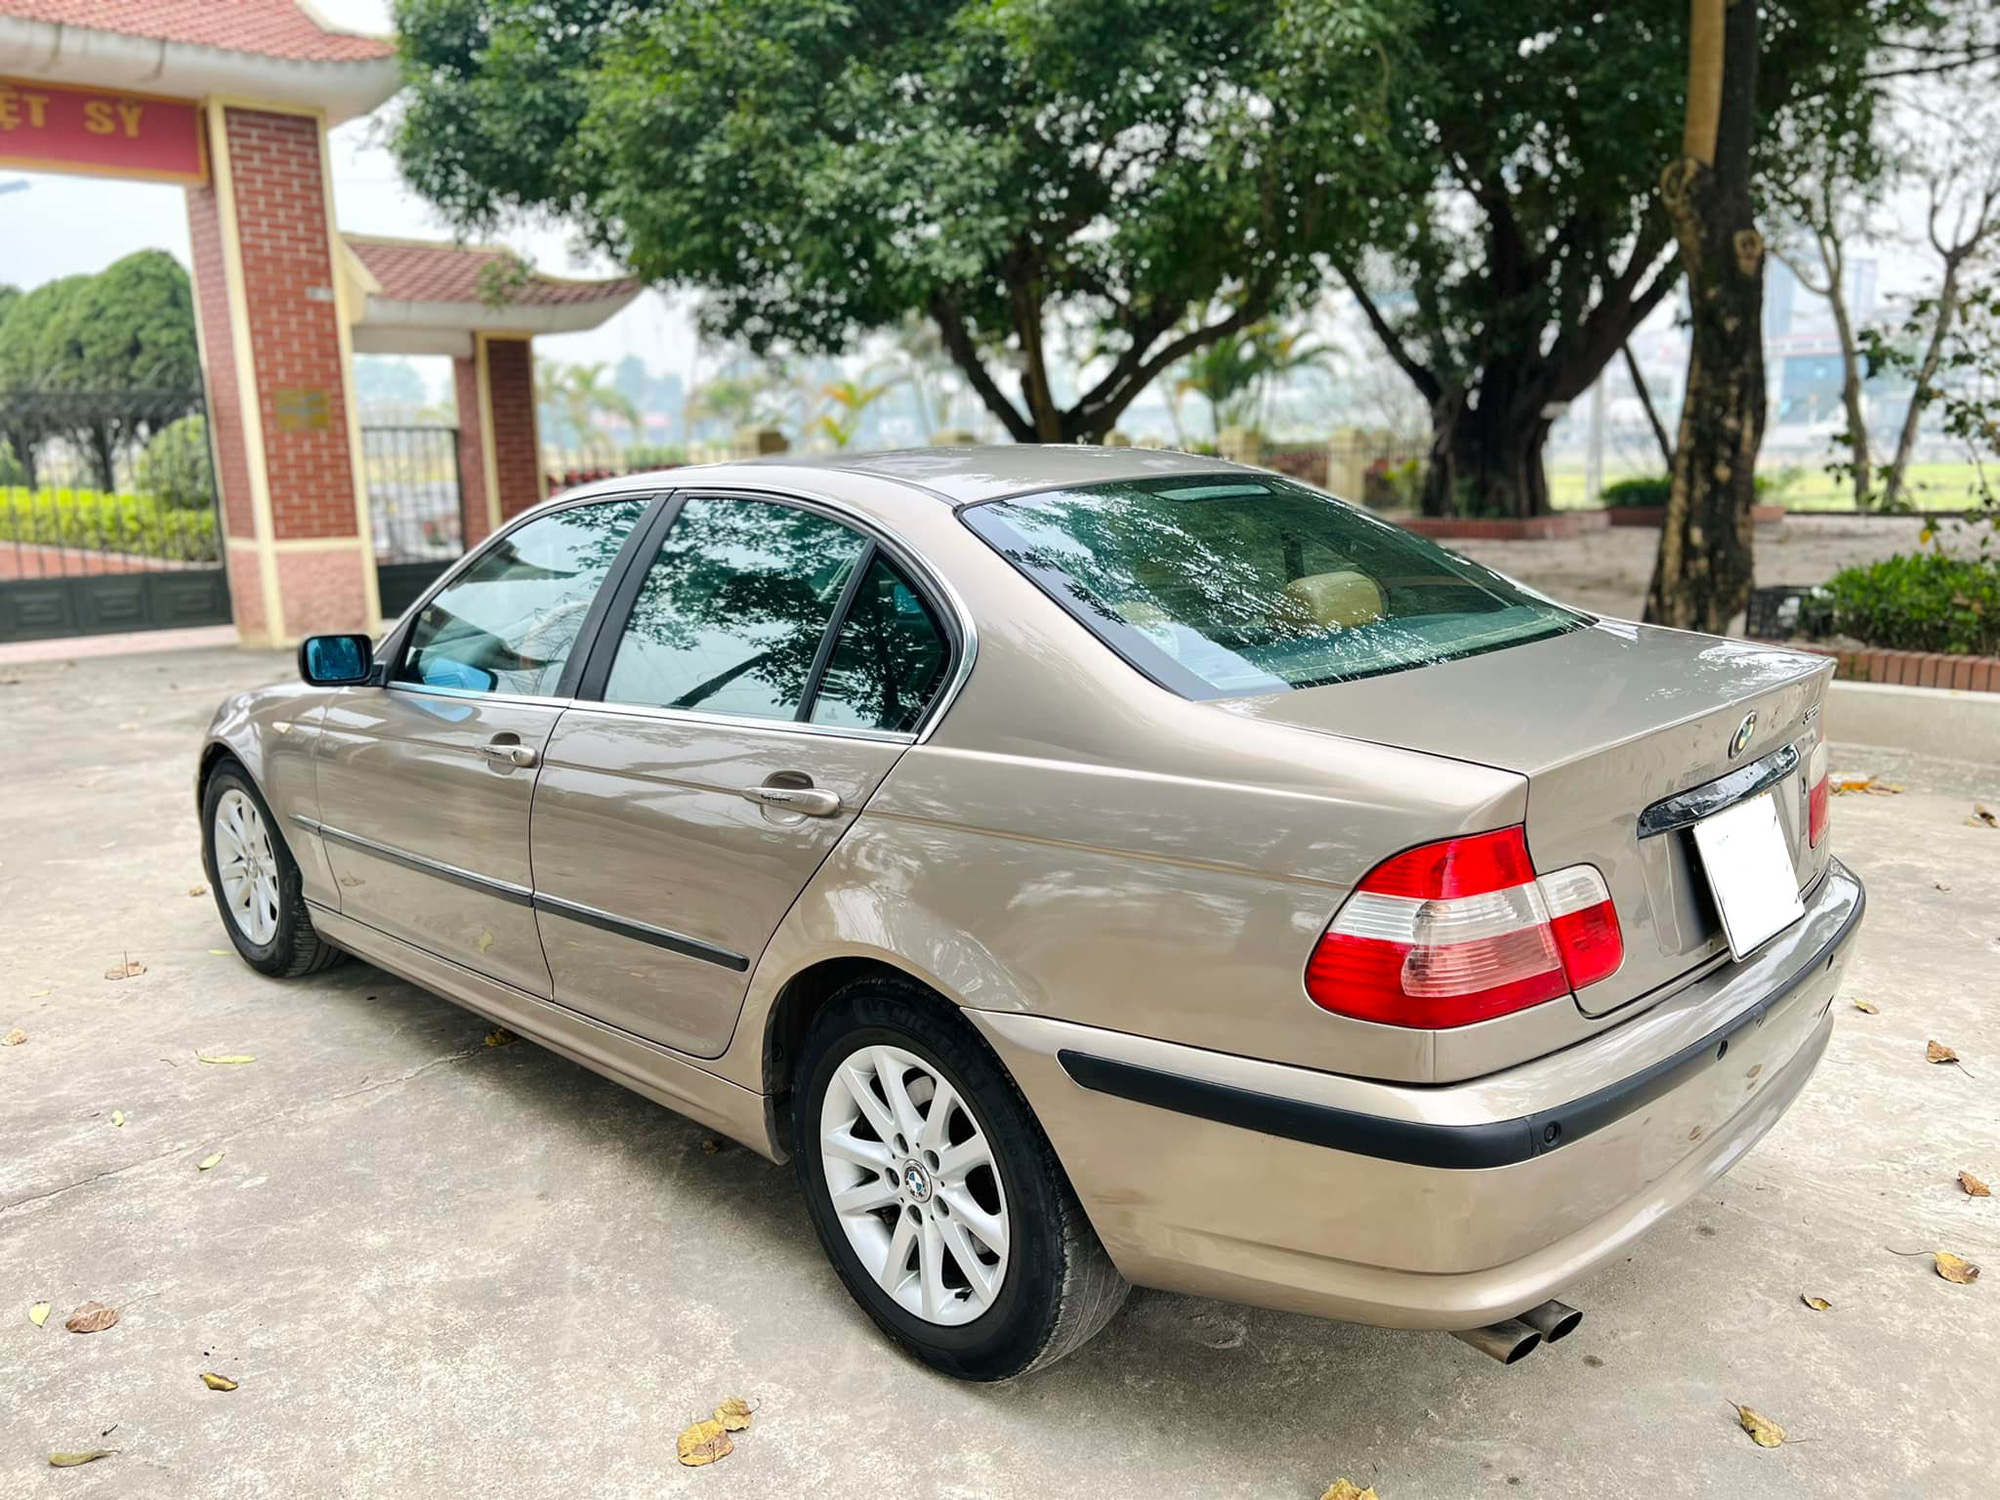 BMW 3Series đời cũ bị triệu hồi tại Việt Nam